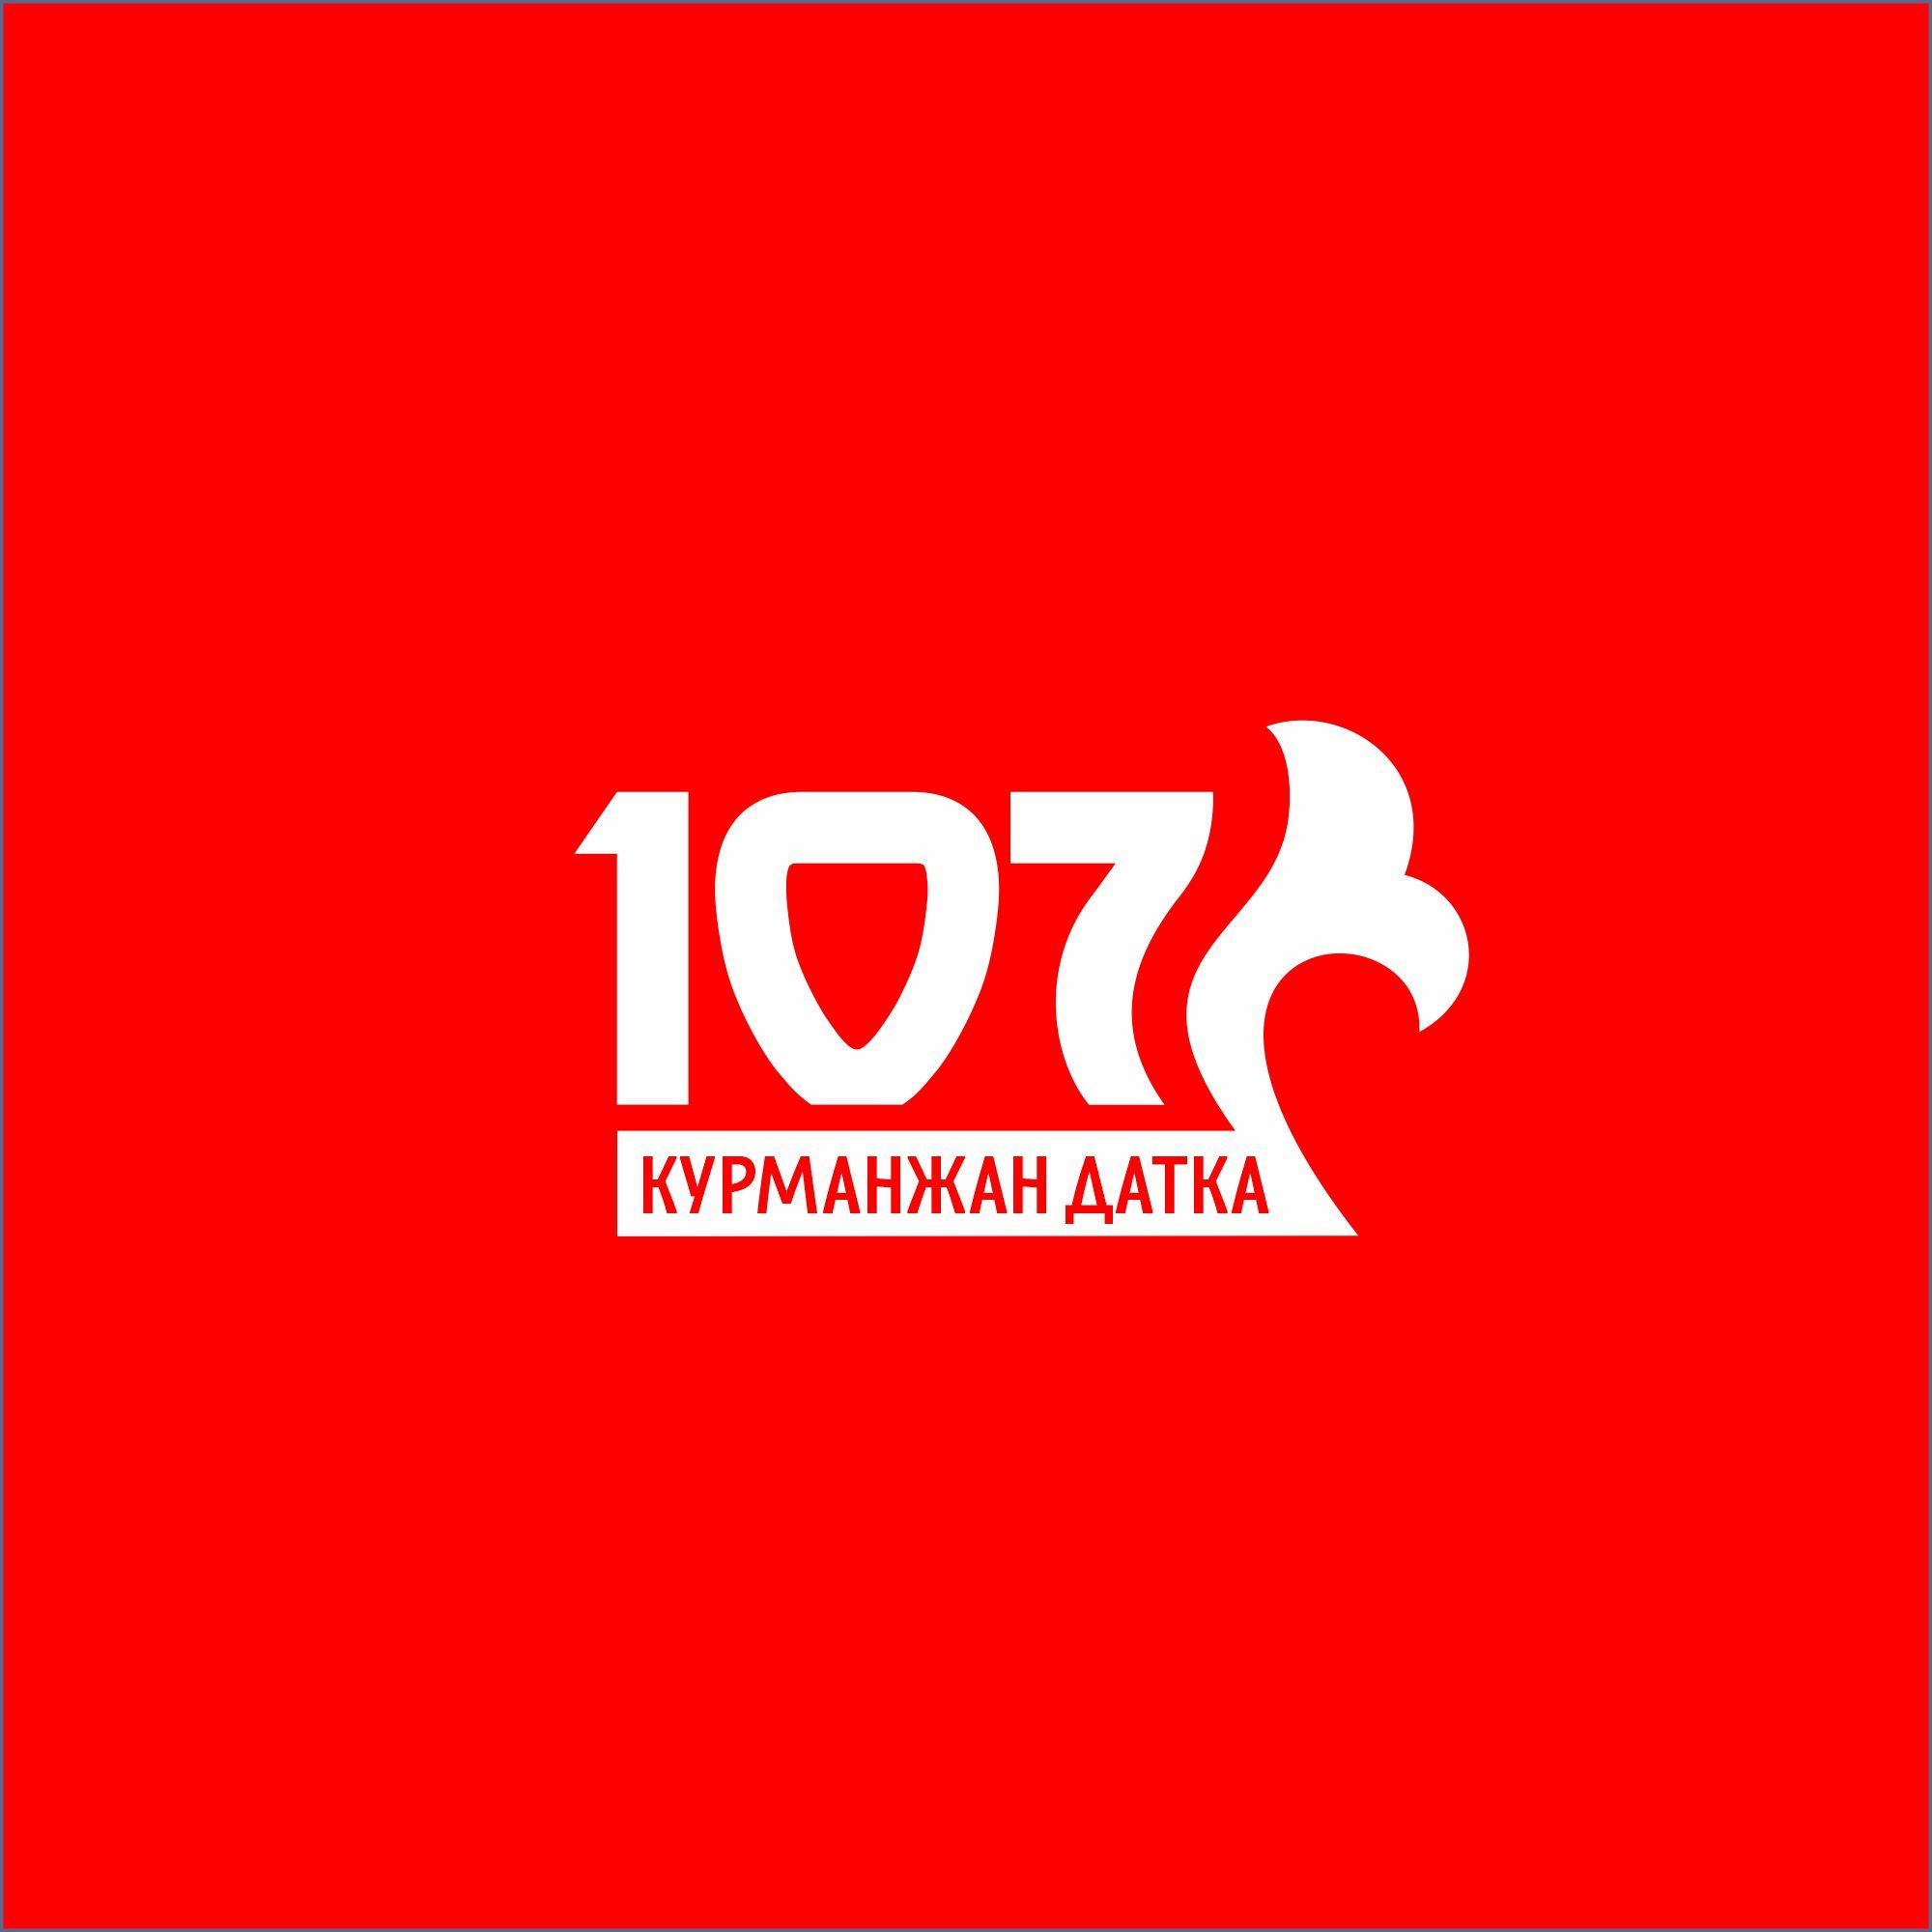 Логотип для 107 - дизайнер salik